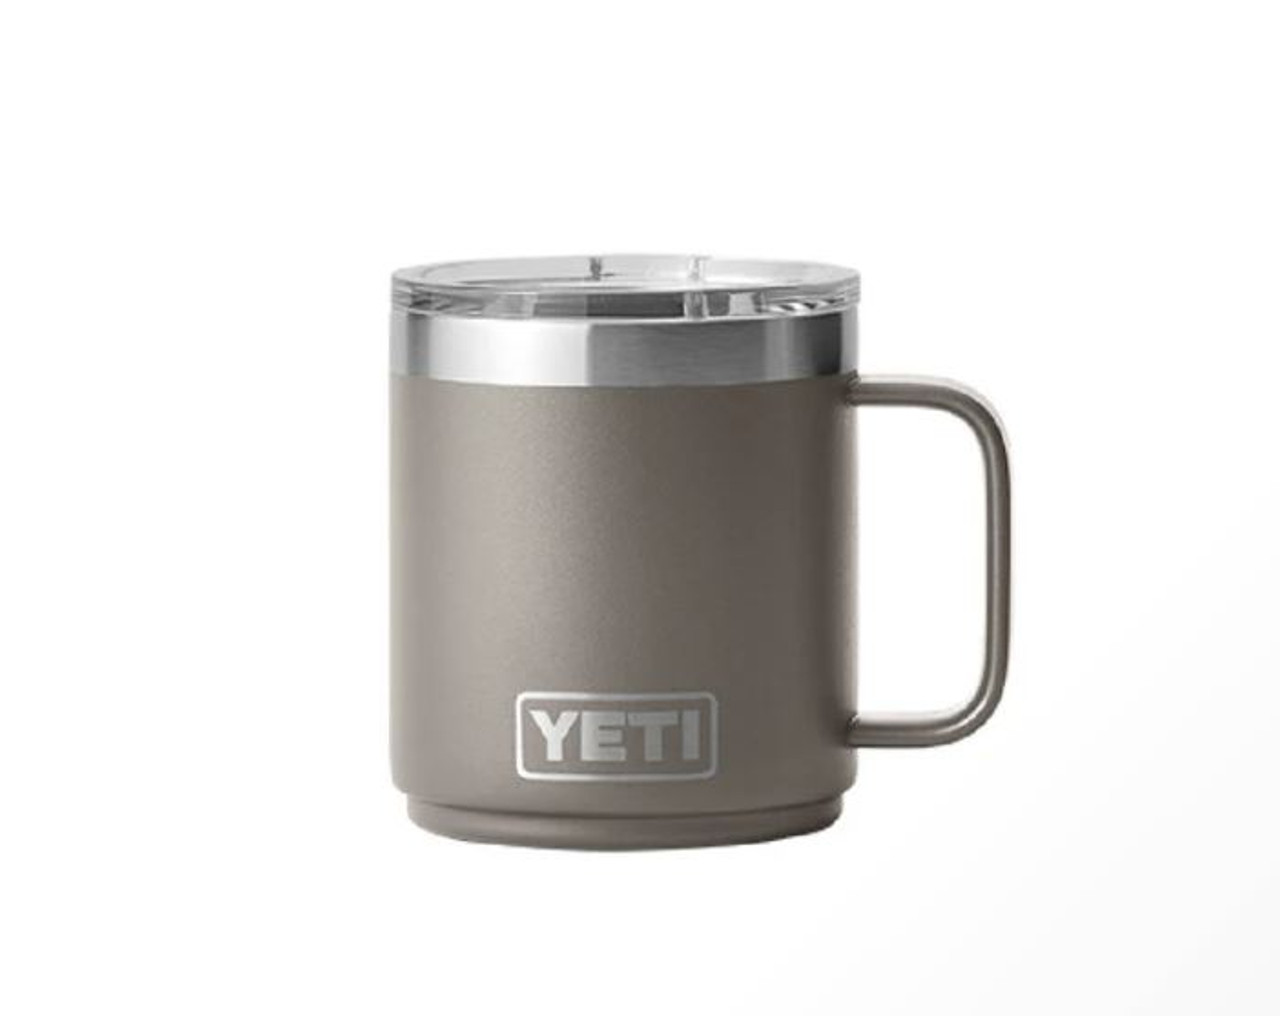 Yeti Rambler 10 Oz Mug with Magslider Lid - Highlands Olive